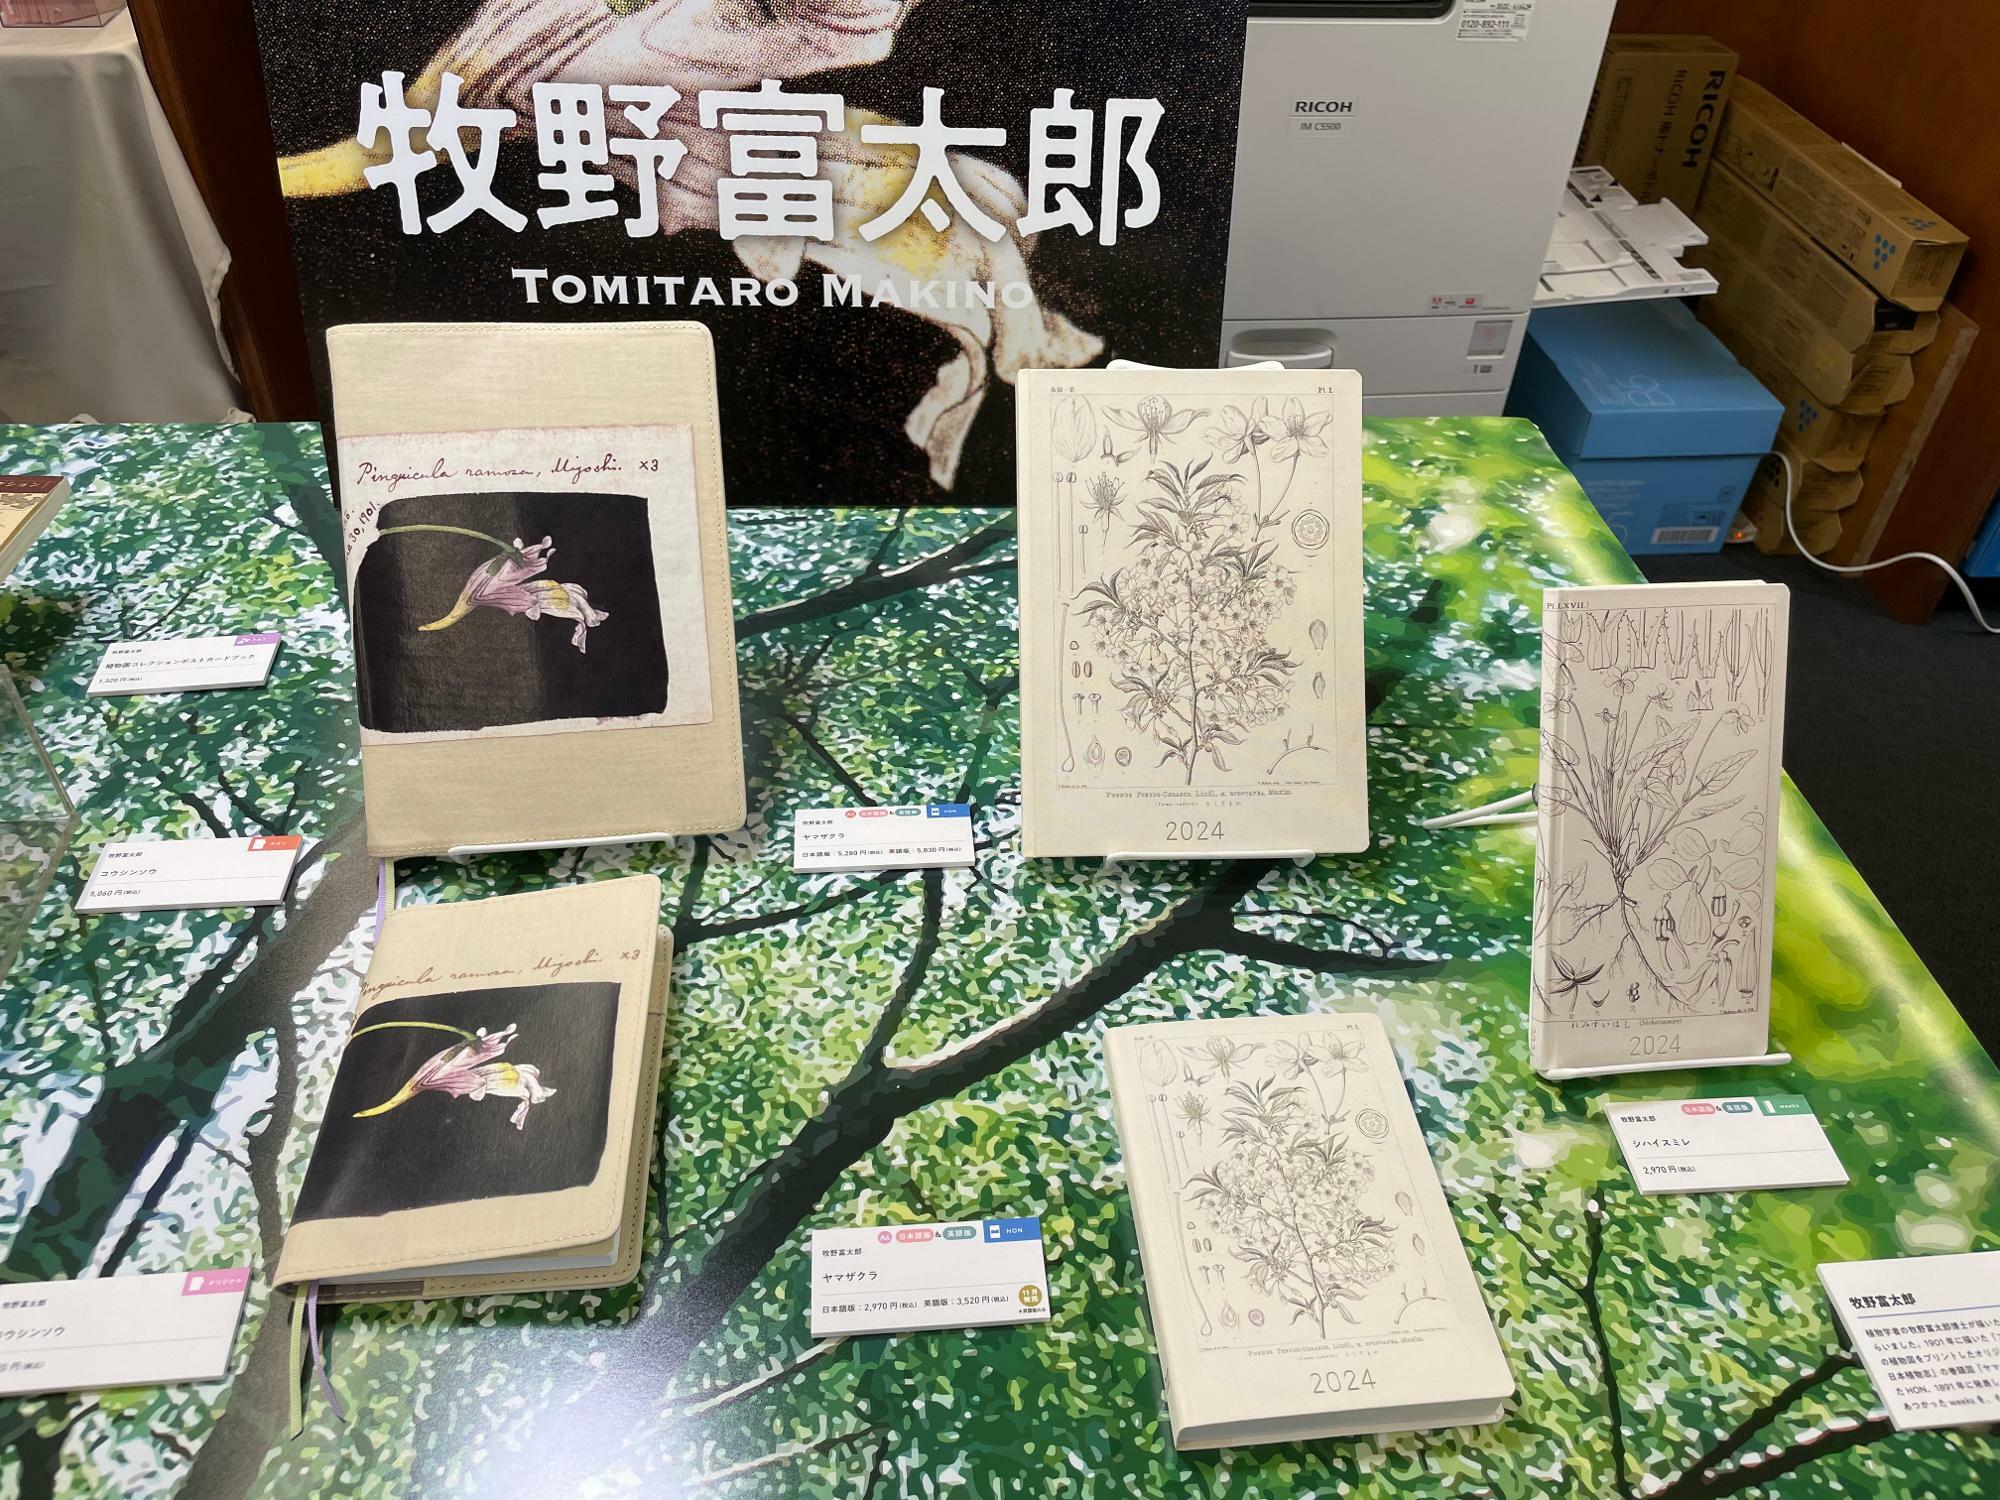 ほぼ日手帳2024年版。牧野富太郎の植物図のモデル。左が「ヤマザクラ」右側の3点が「HON」タイプ